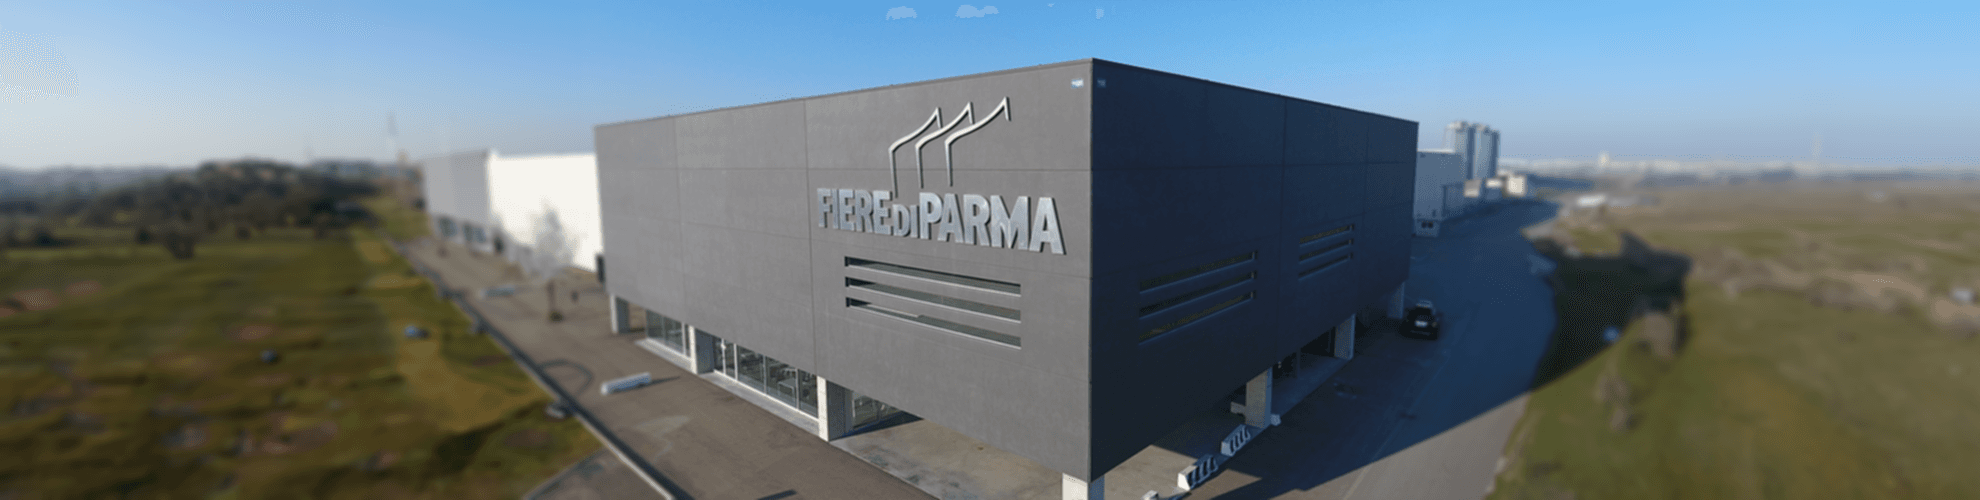 Le Fiere di Parma | Crédit Agricole